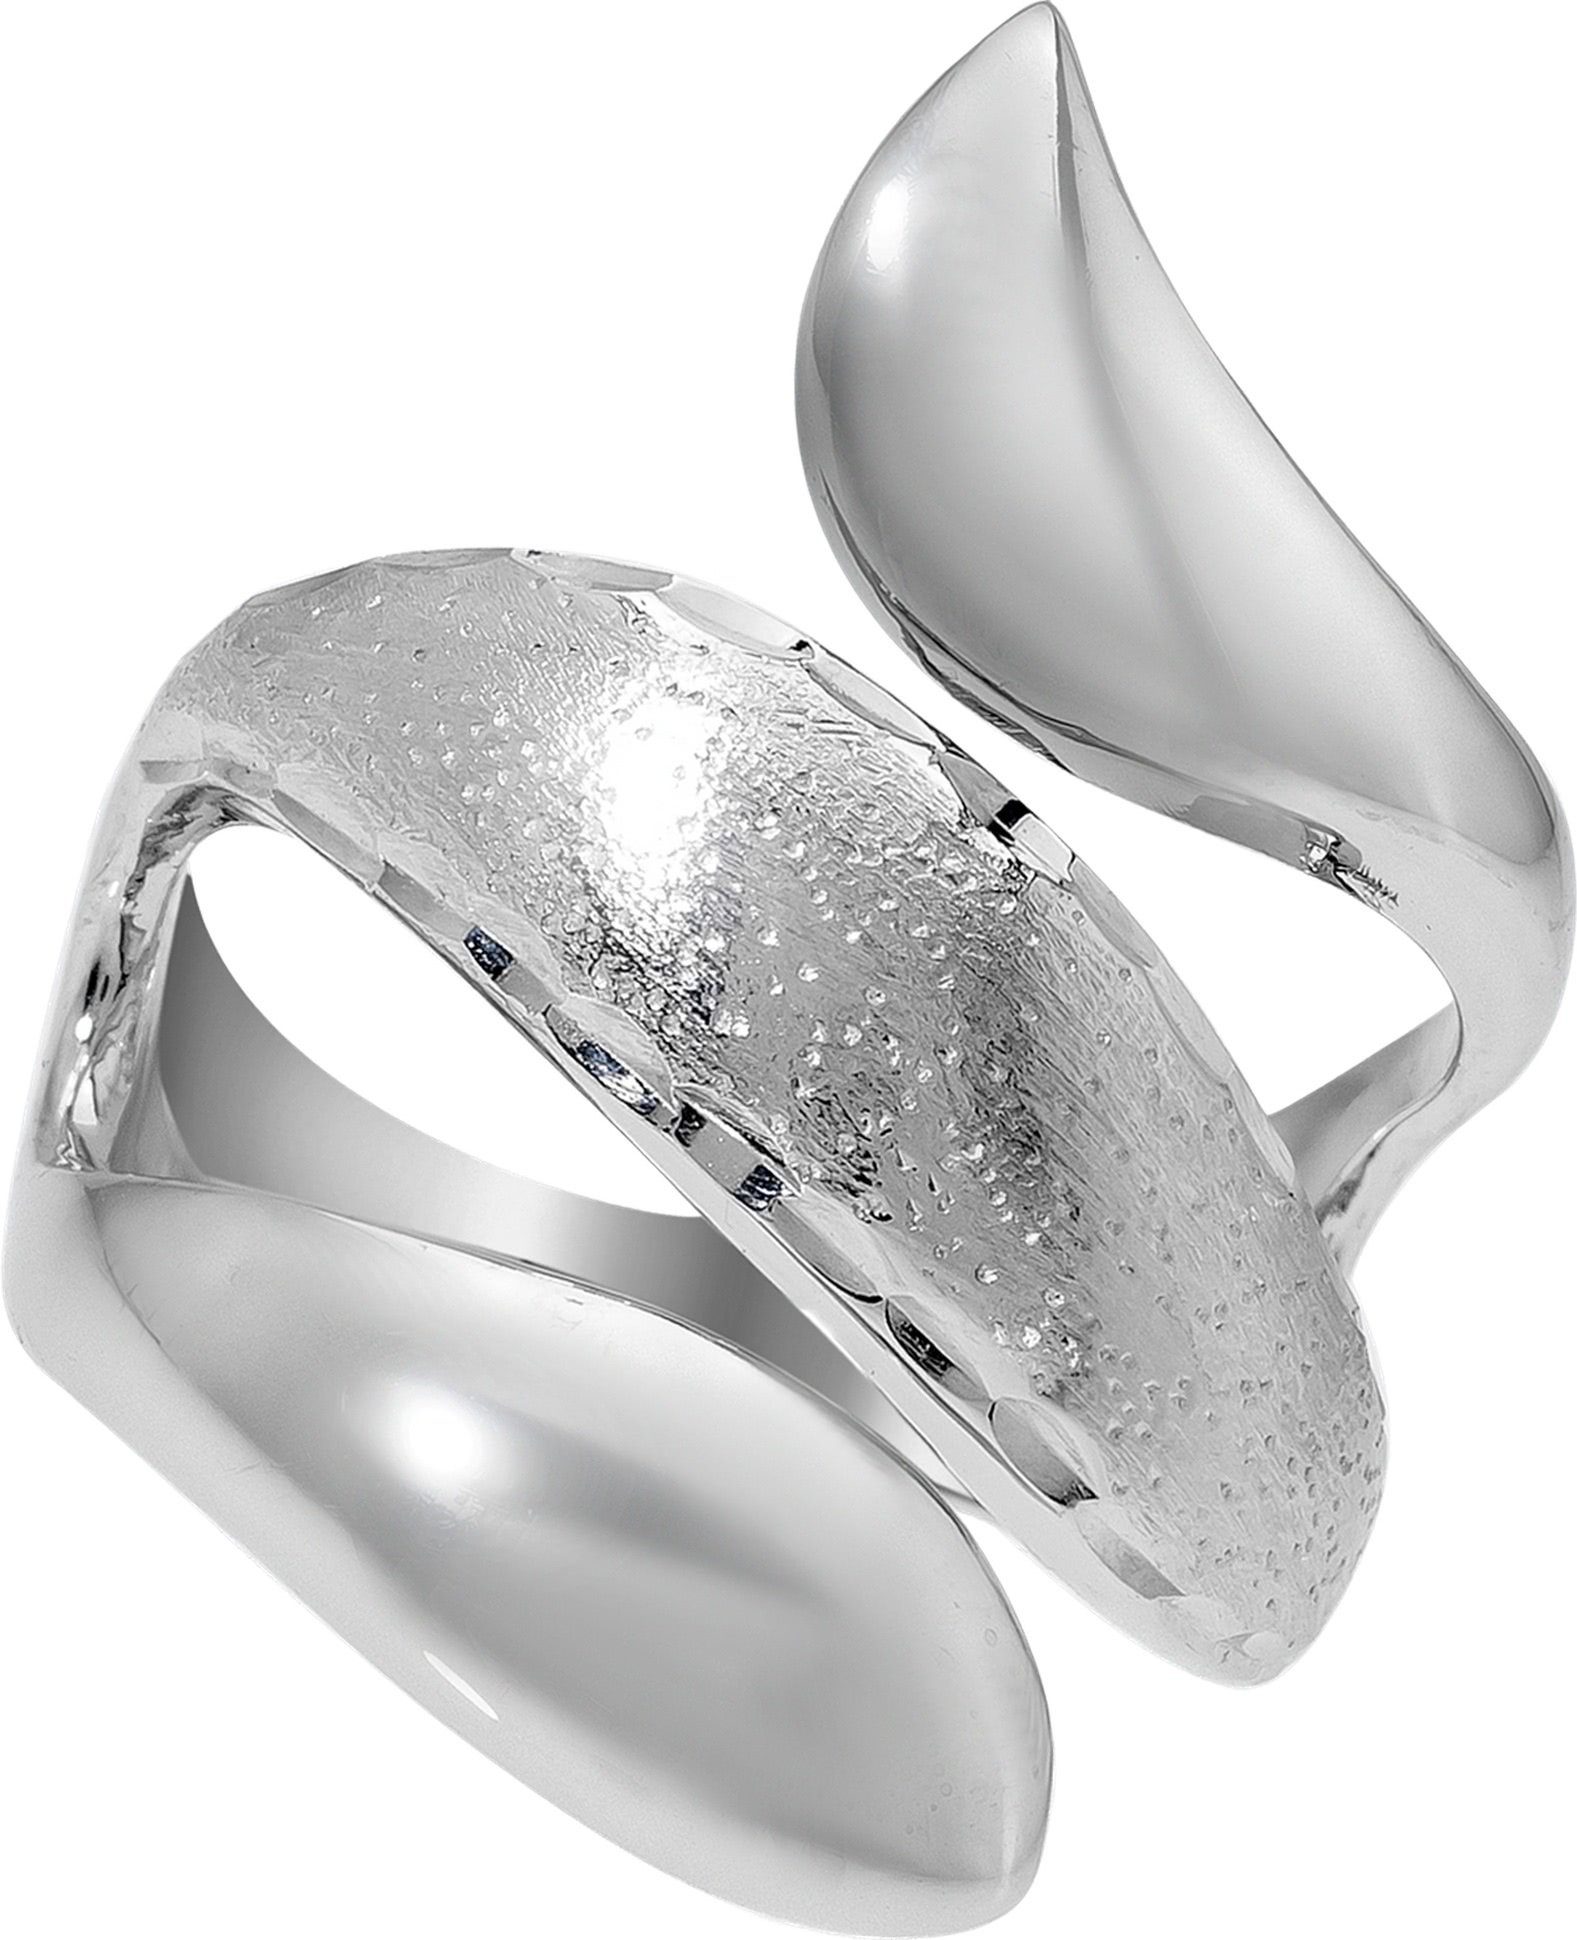 Balia Silberring Balia Ring für Damen mit diamantierter (Fingerring), Fingerring Größe 52 (16,6), 925 Sterling Silber (Schlange) Silber 925